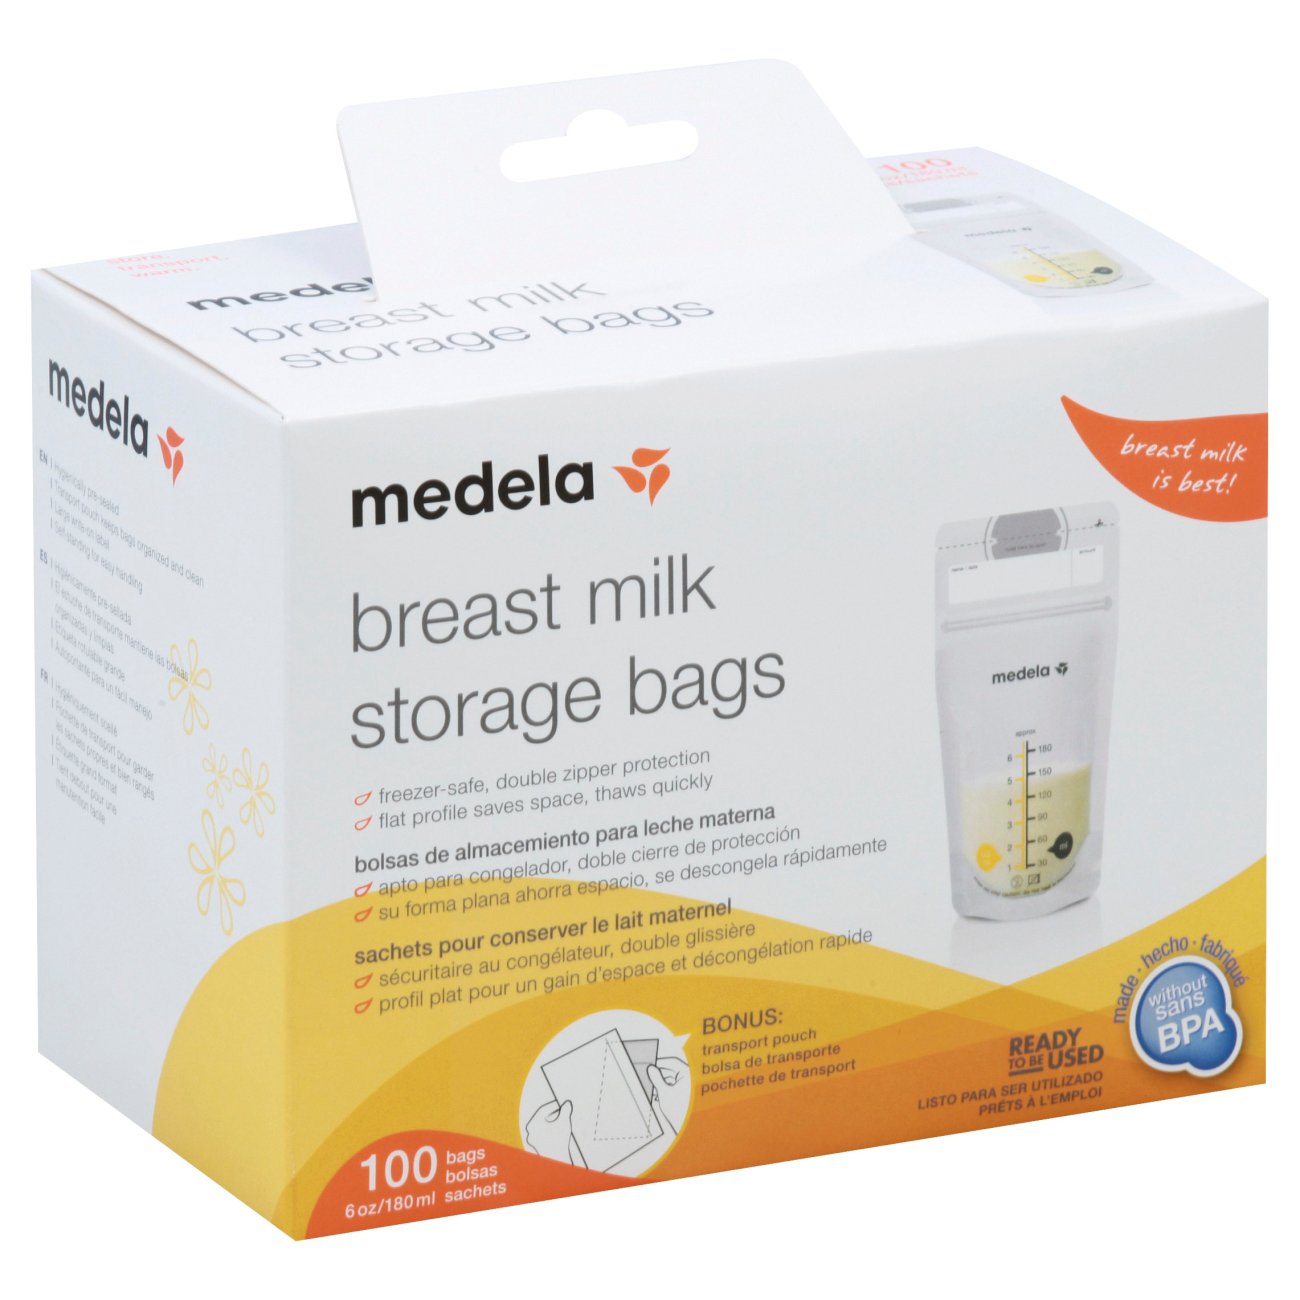 Medela Storage Bags, Breast Milk, 6 Ounce - 25 bags